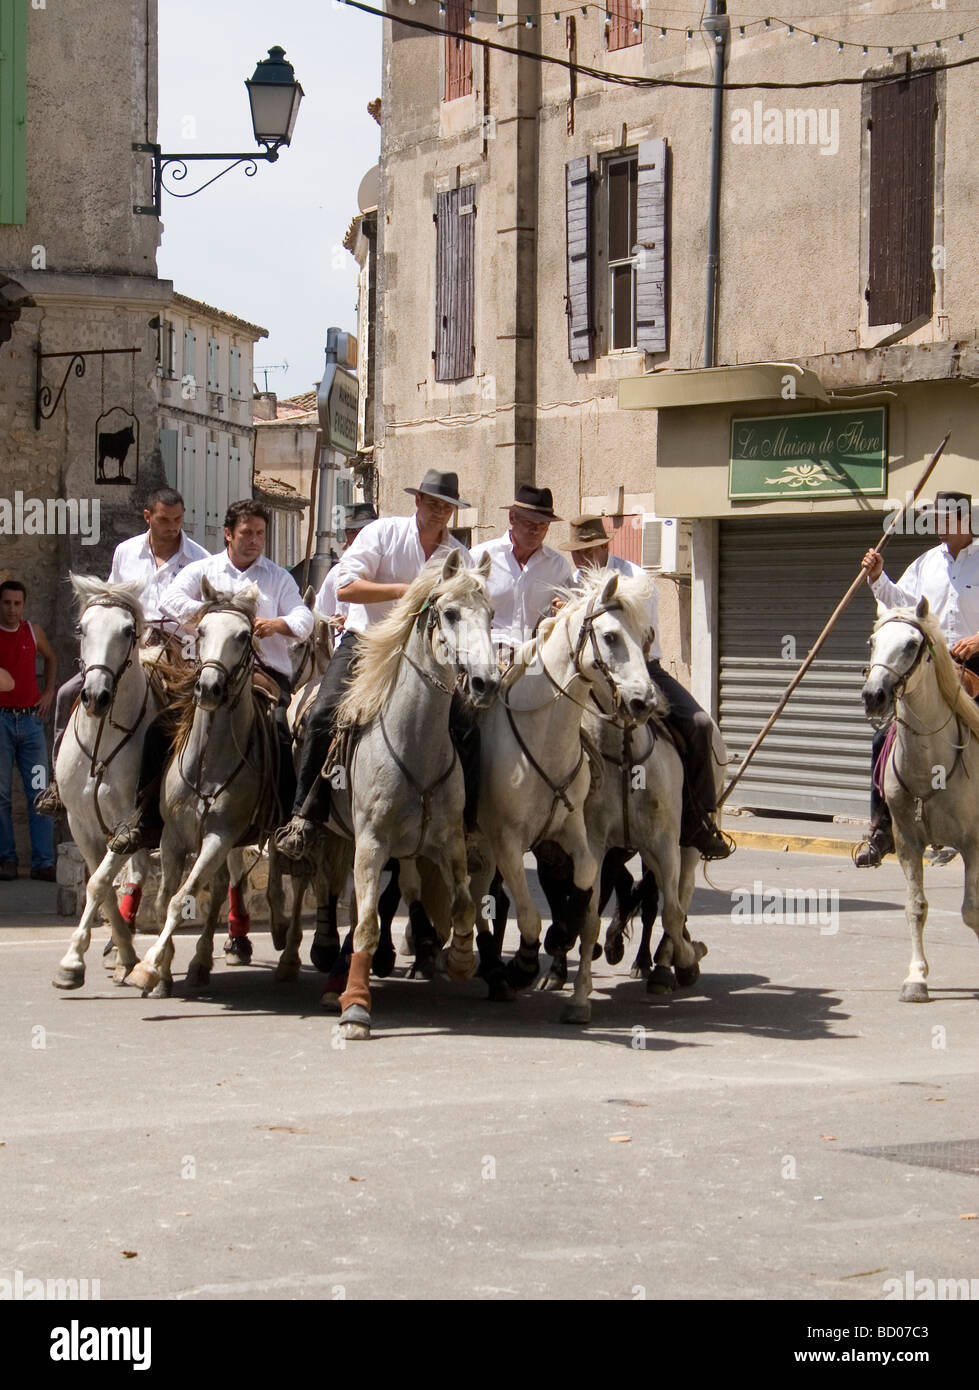 Camargue tuteurs sur leurs chevaux blancs le troupeau de taureaux noirs à travers les rues sur le chemin de l'arène Banque D'Images